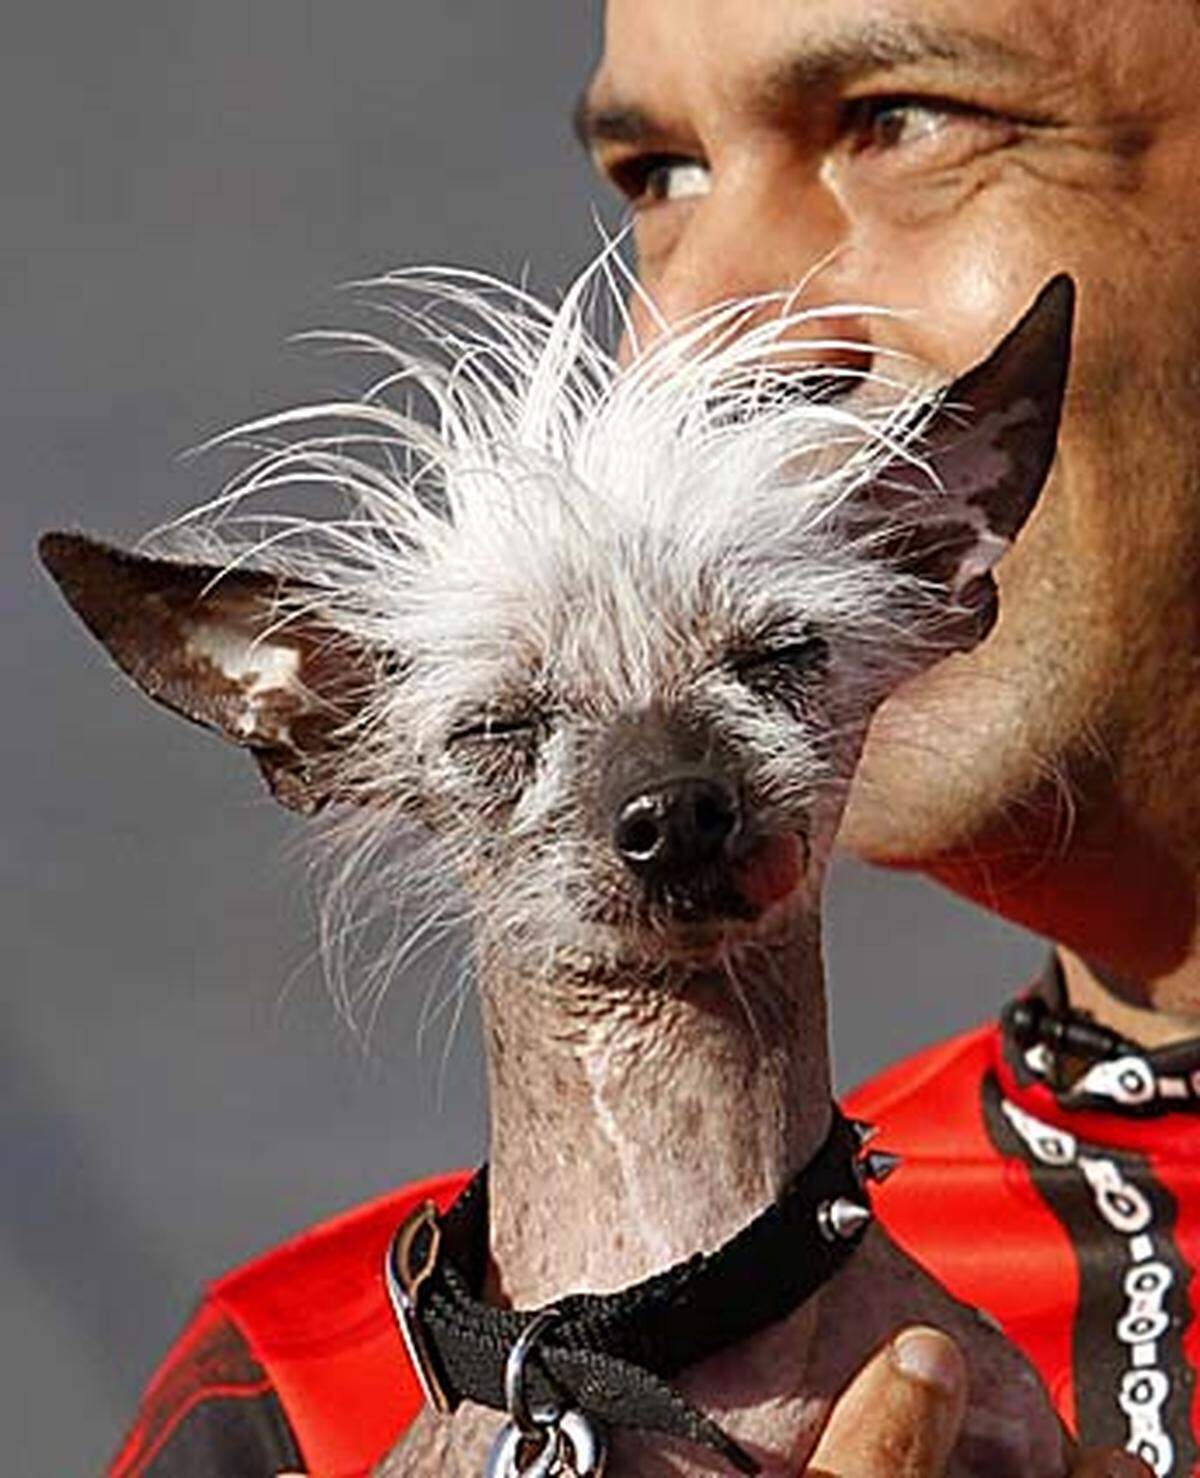 Immer vorn dabei sind die Chinesischen Schopfhunde (Chinese Crested Dogs). "Rascal" stieg mit seiner besonderen Haarpracht in den Ring ...